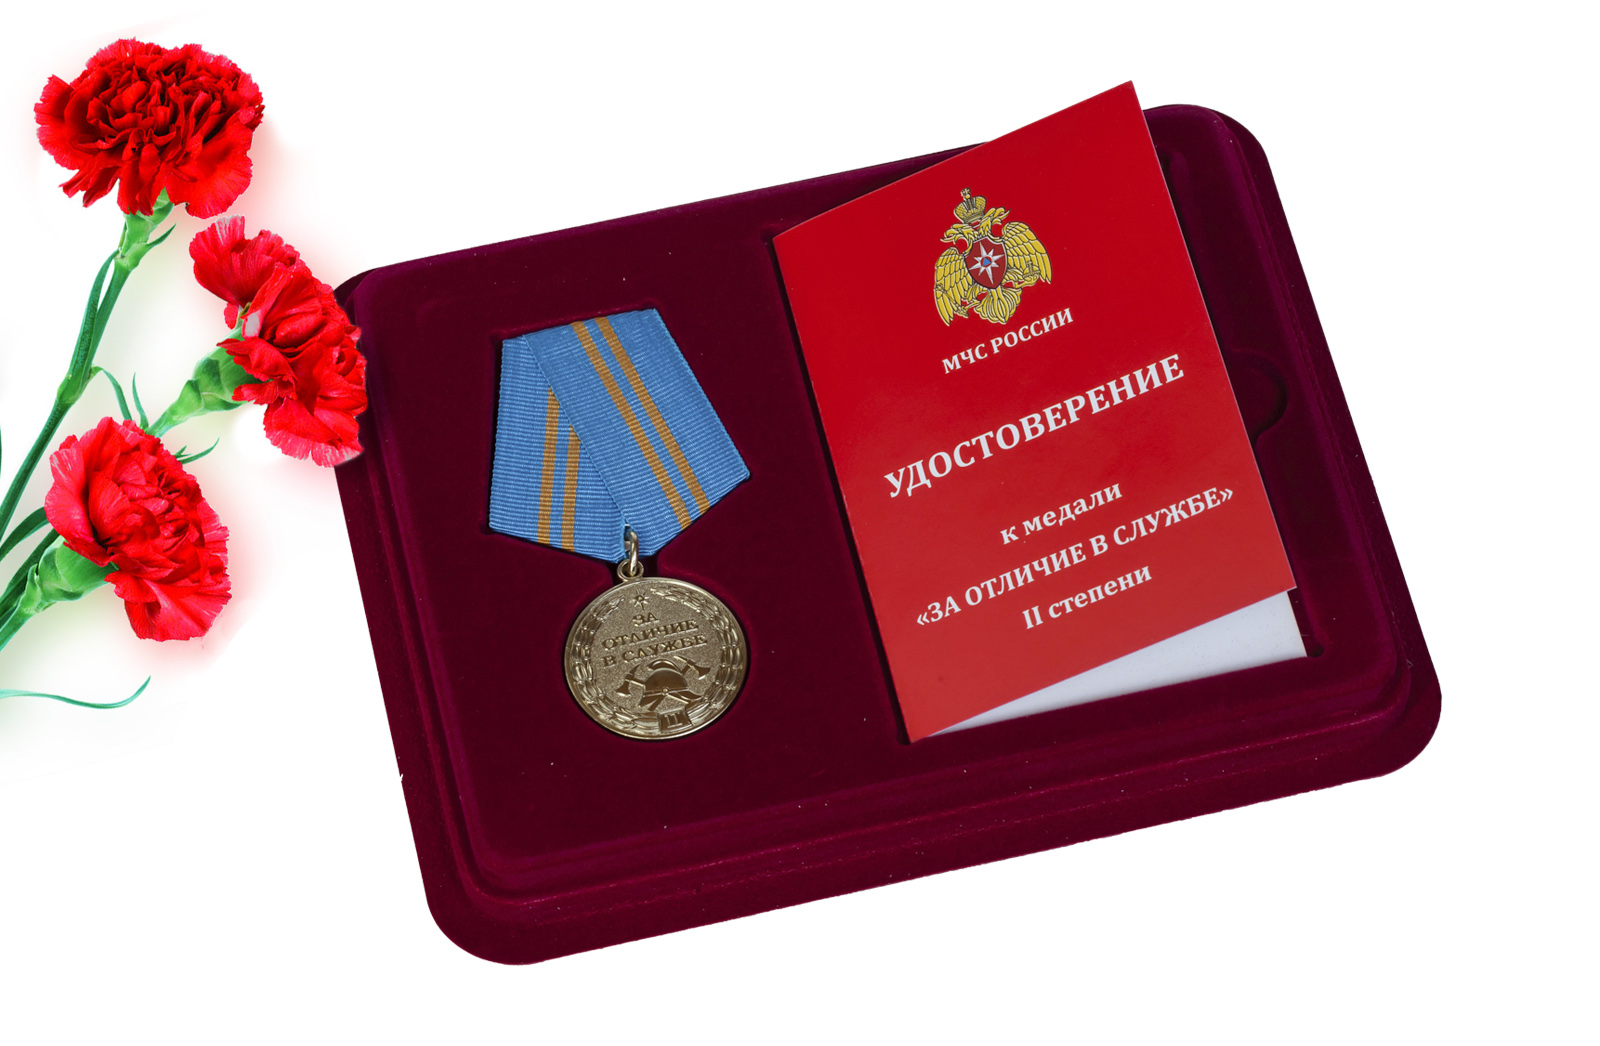 Купить медаль МЧС За отличие в службе 2 степени по низкой цене